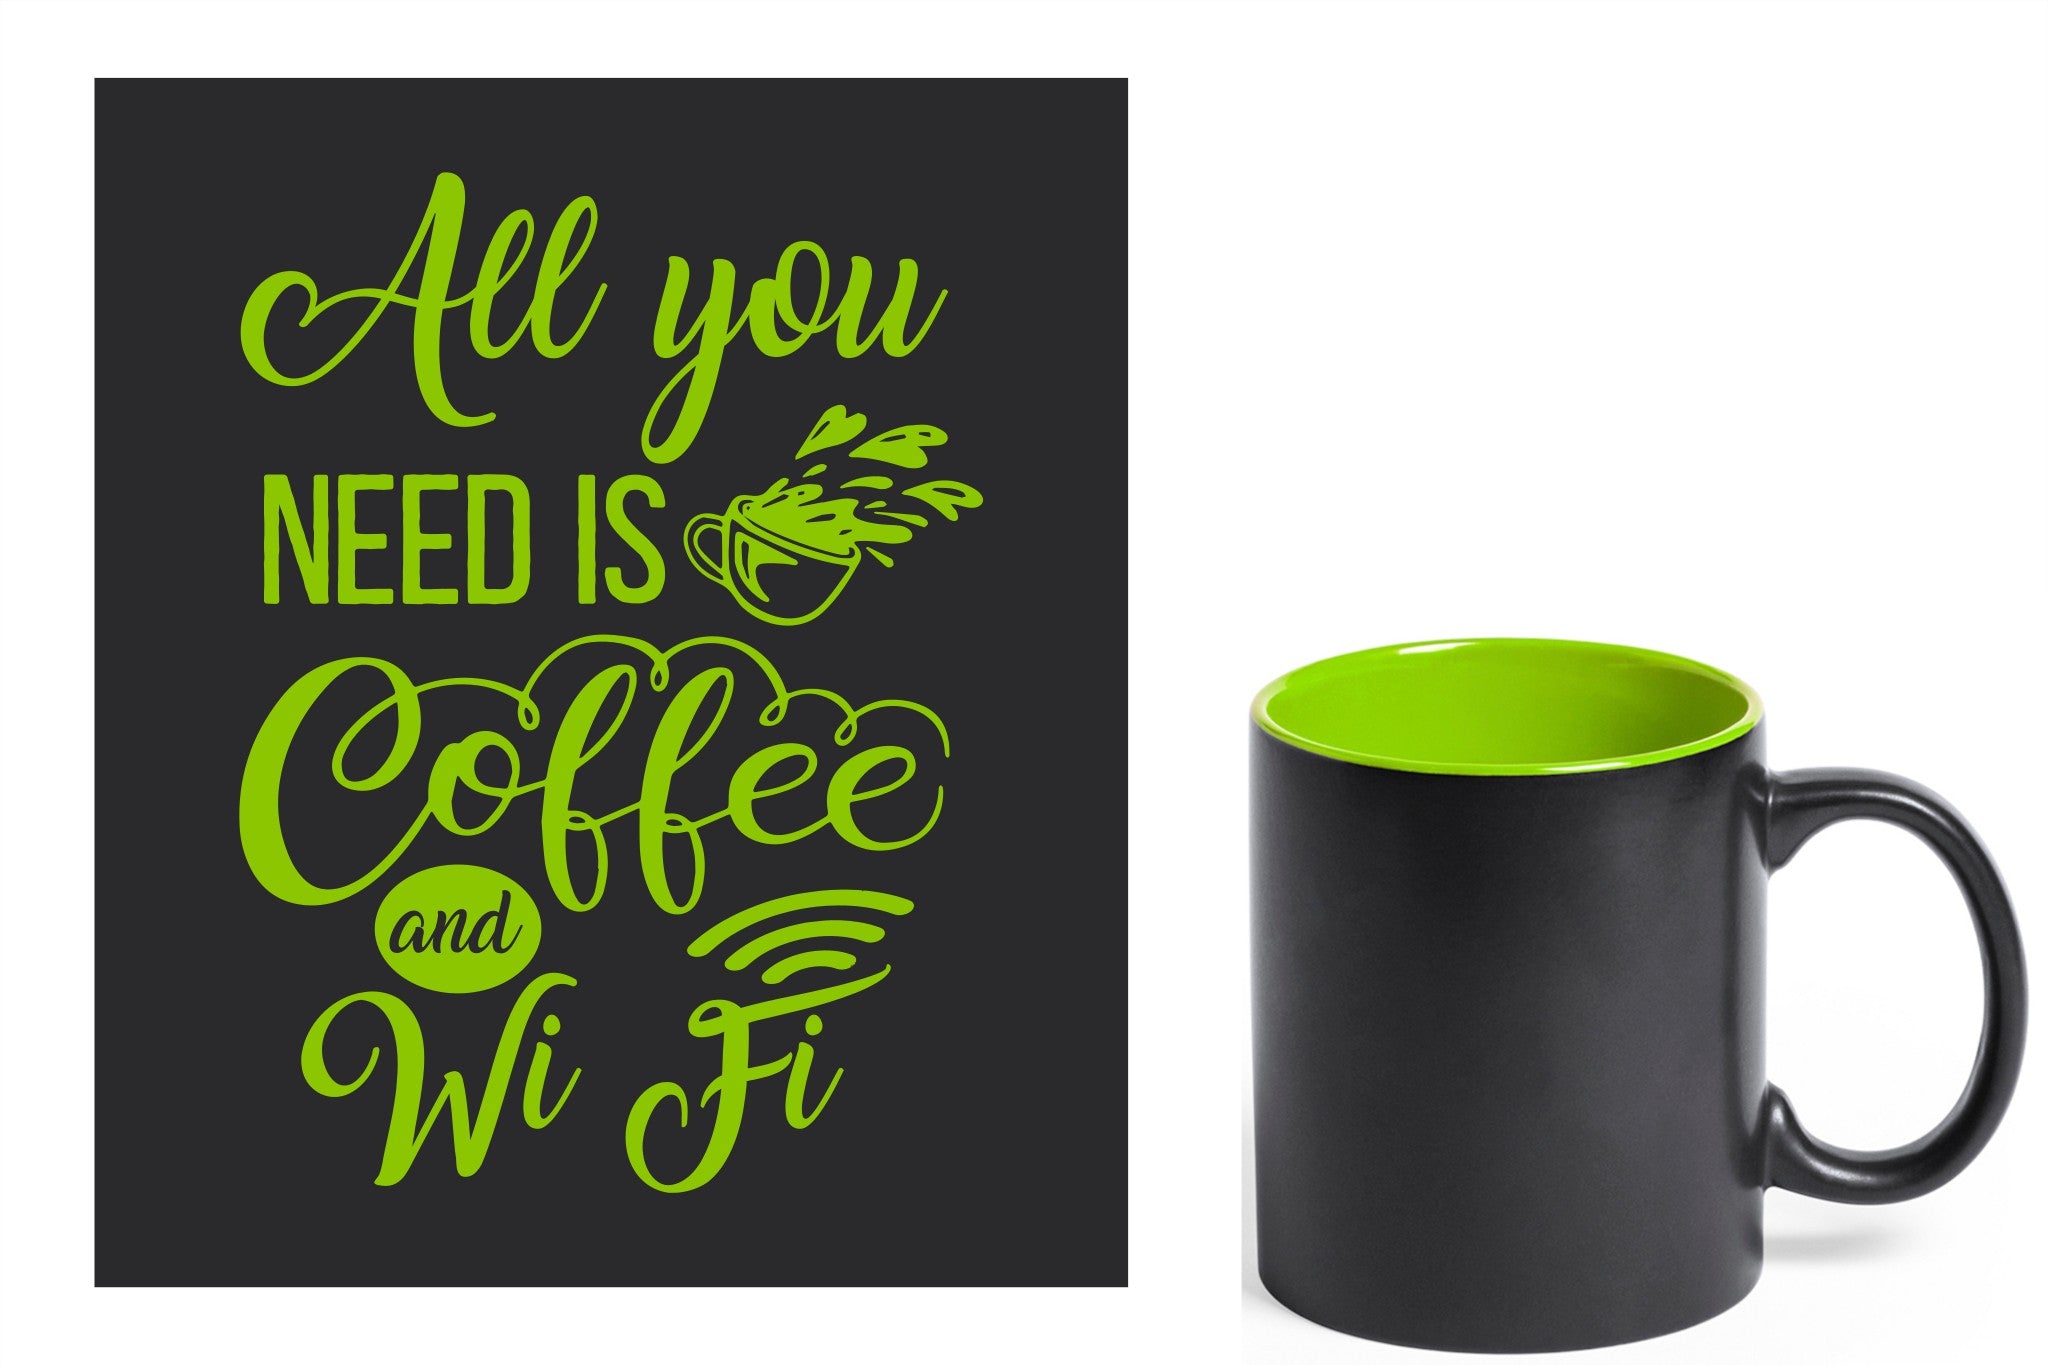 zwarte keramische mok met groene gravure  'All you need is coffee and wifi'.